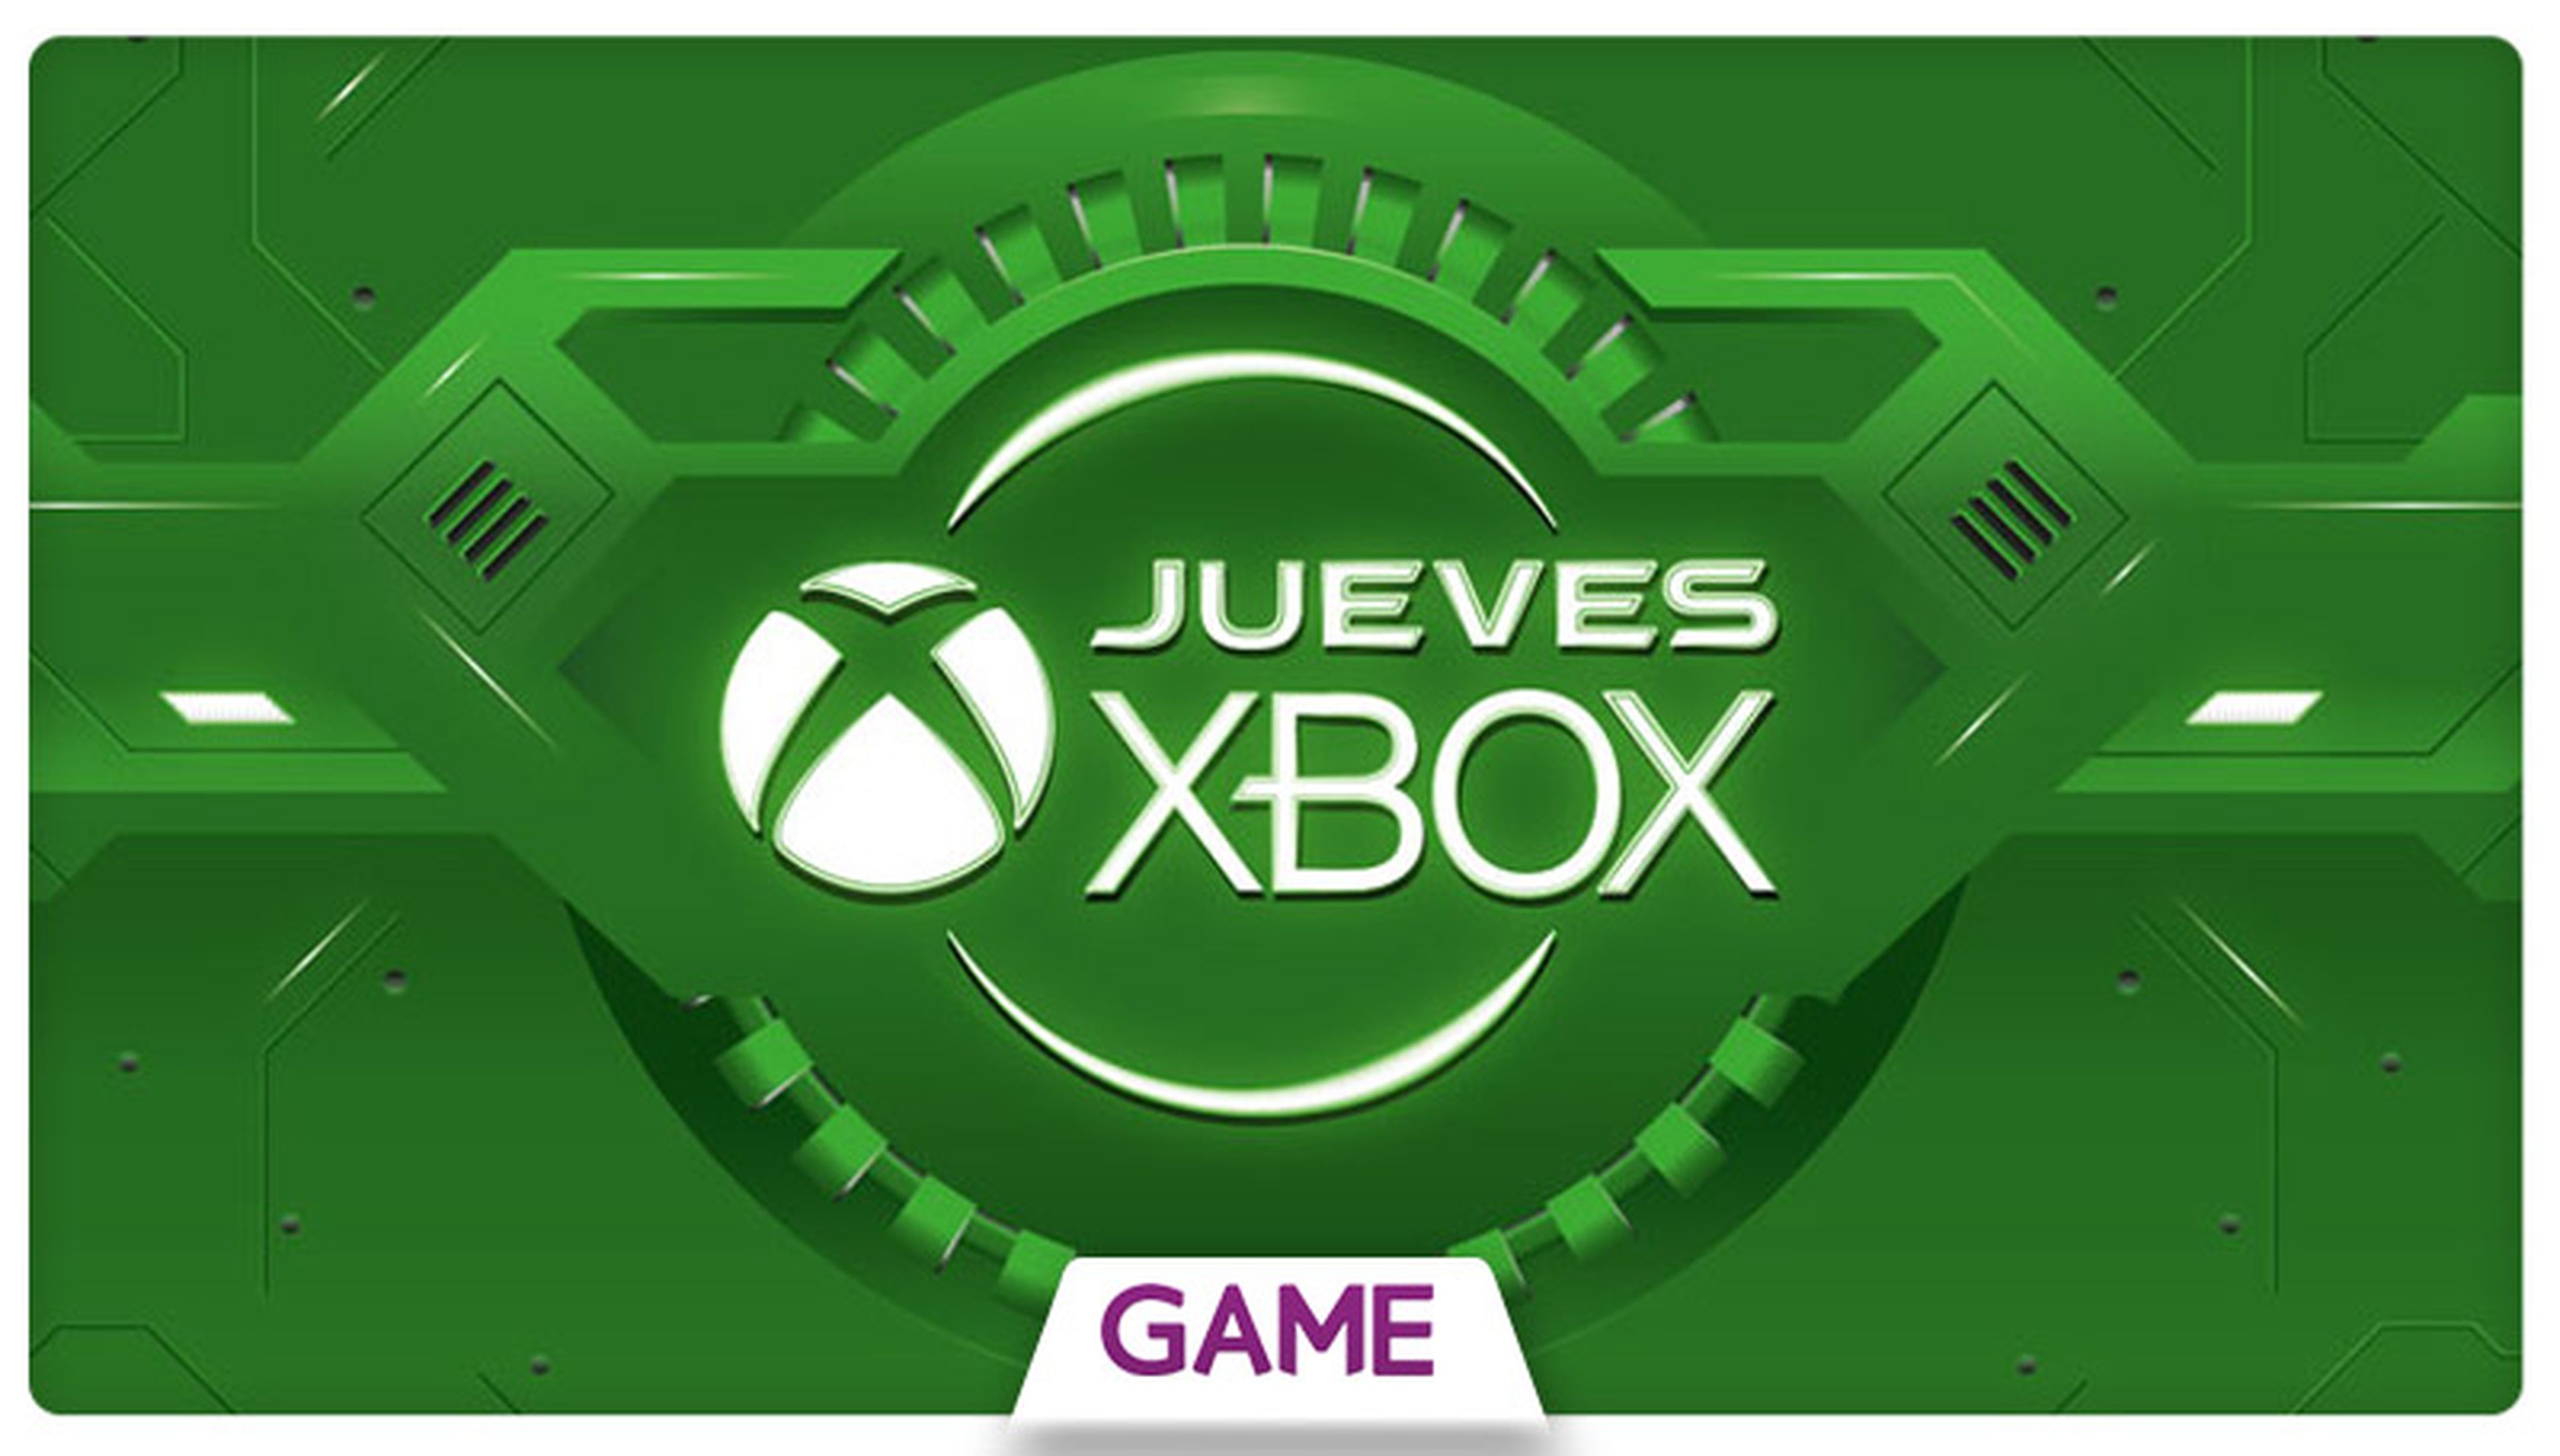 Jueves Xbox en GAME: Ofertas del 14/04/2016